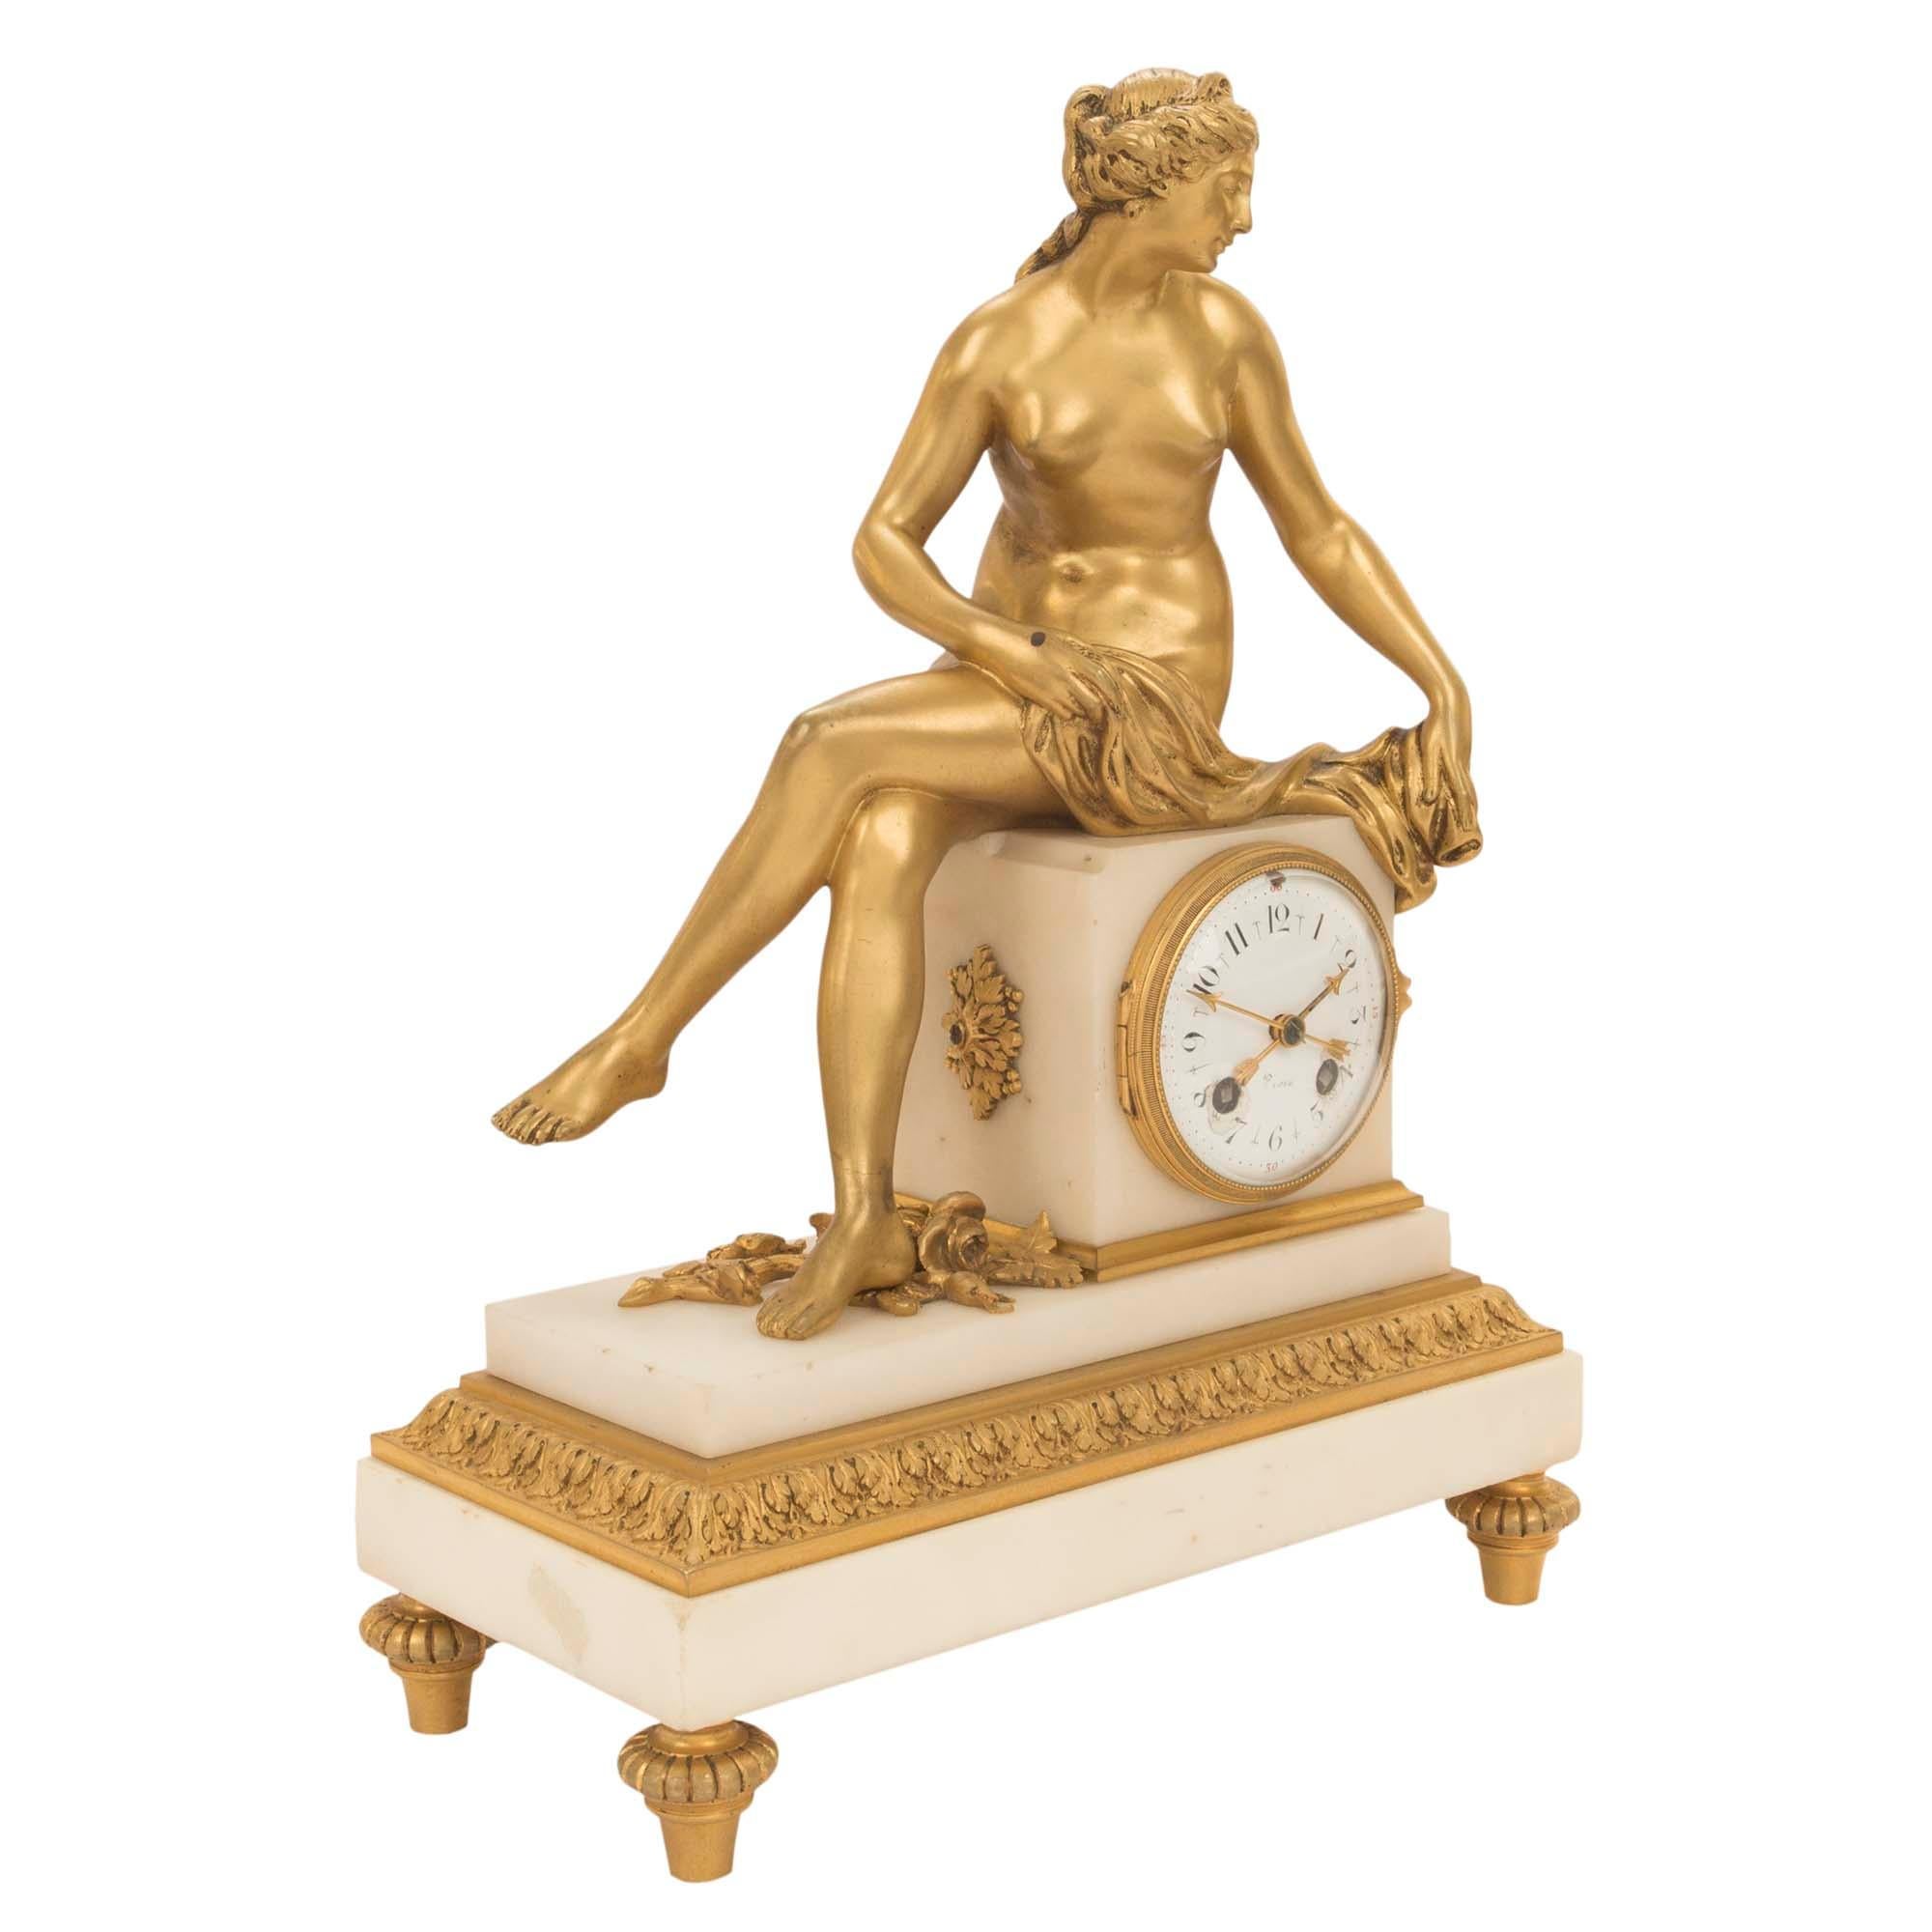 Eine sehr exquisite französische Uhr aus der Mitte des 19. Jahrhunderts aus Louis XVI-St. Ormolu und weißem Carrara-Marmor. Der rechteckige Marmorsockel ist mit einer sehr reichen und detaillierten Eichelblattumrandung aus Ormolu verziert. Darüber